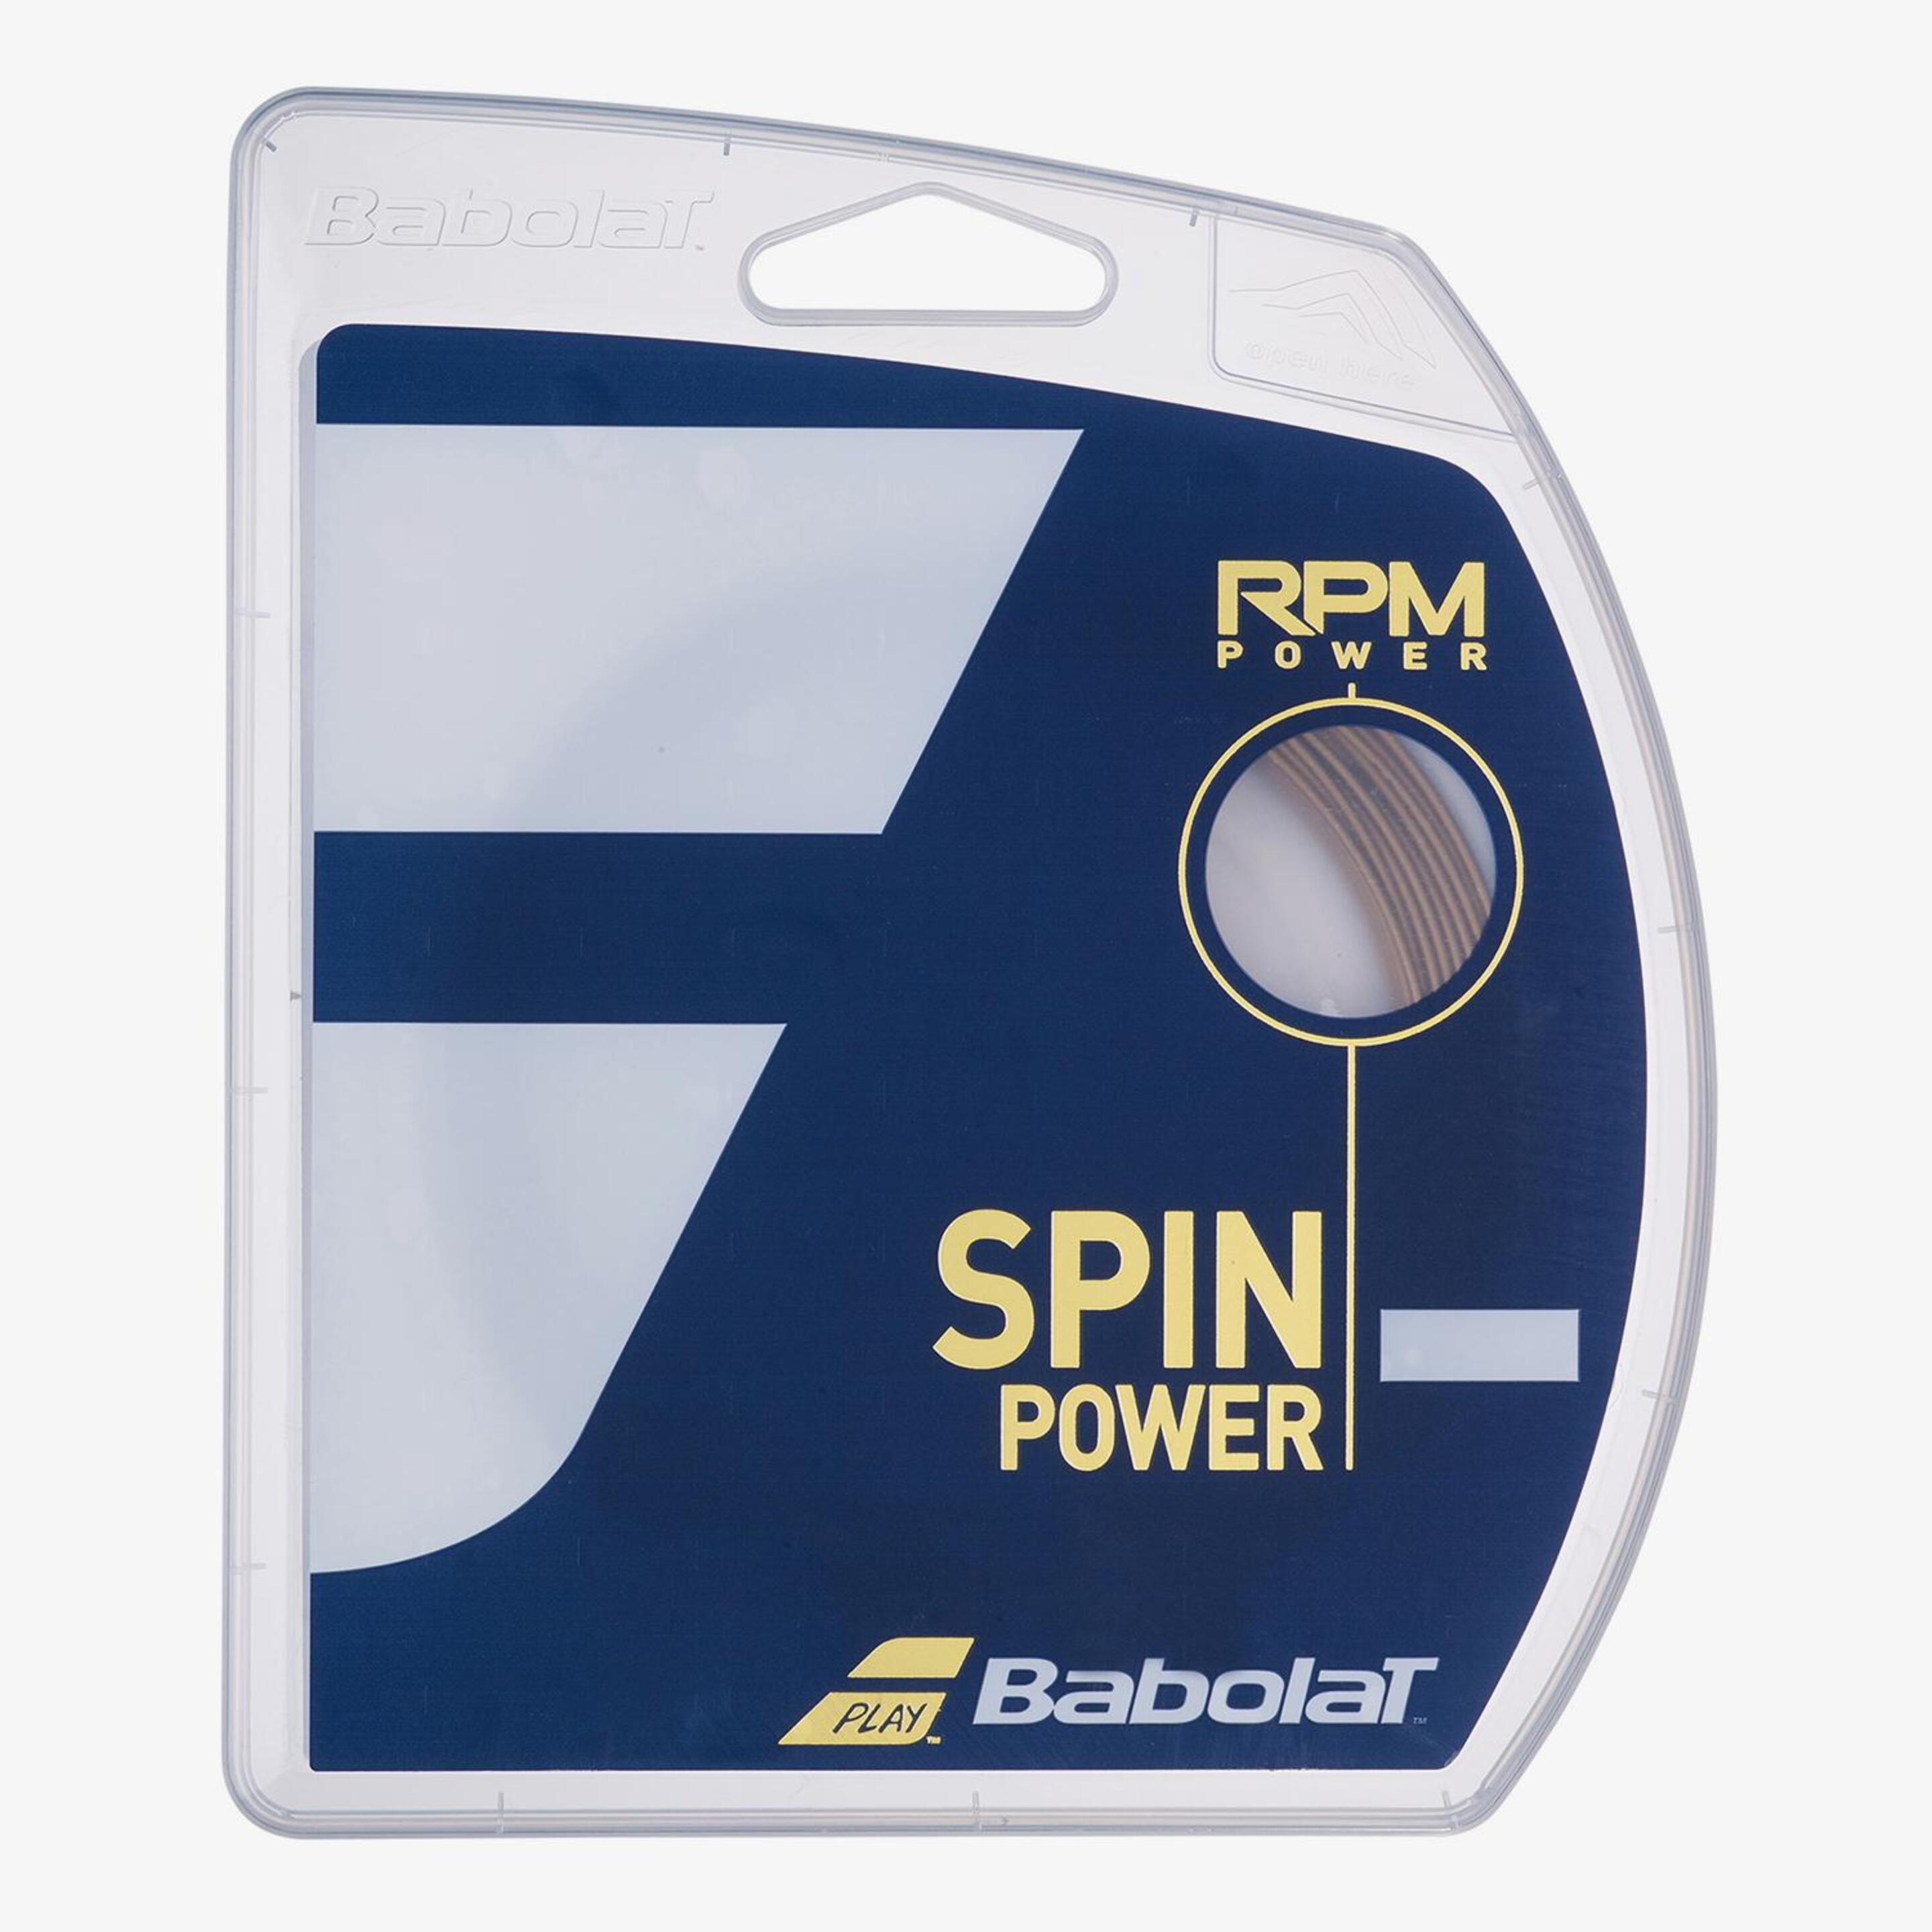 Babolat Rpm Power 12m - unico - Encordado Raqueta